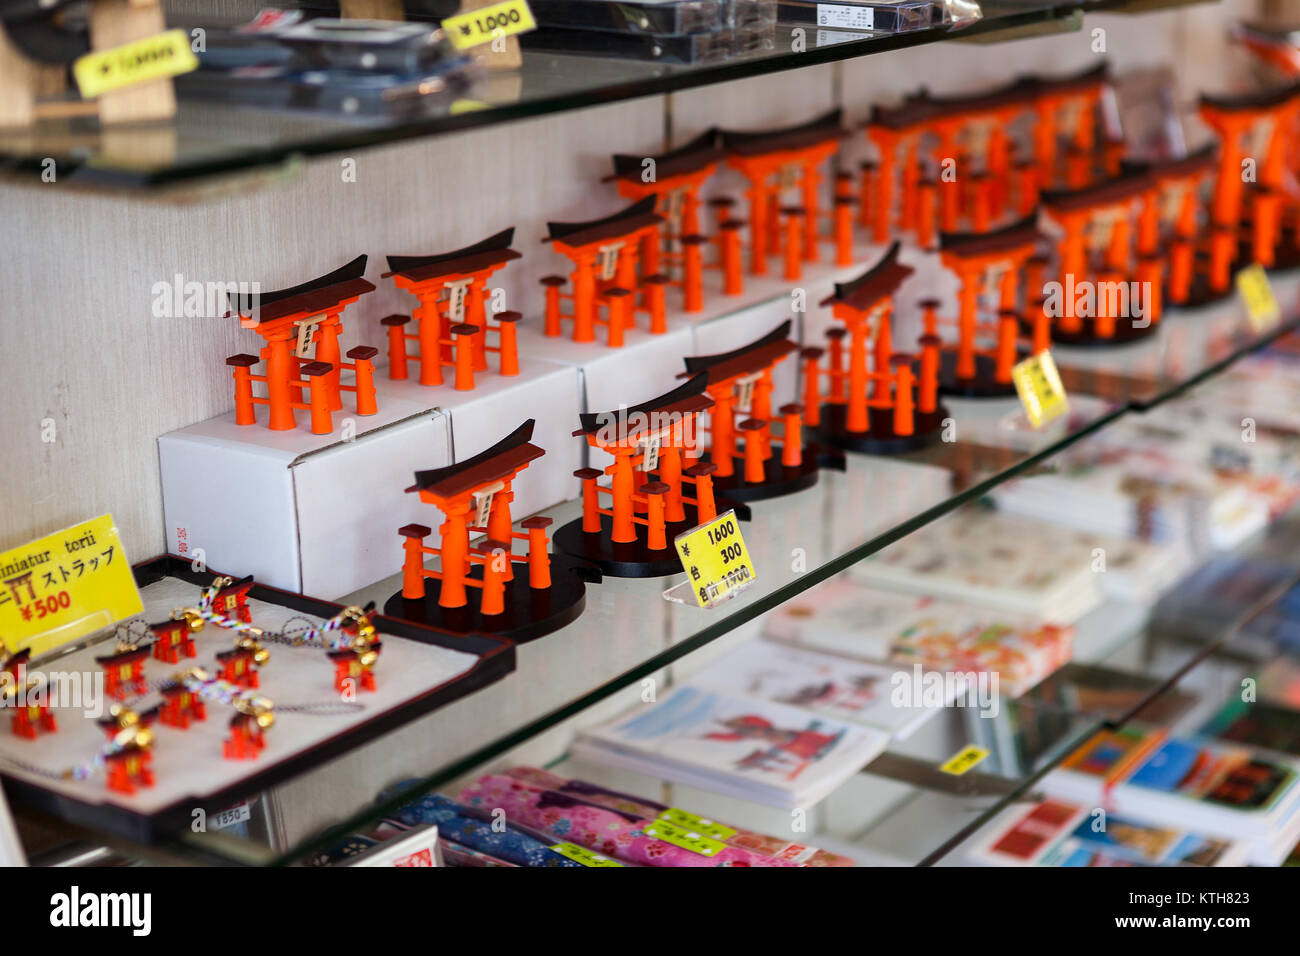 ITSUKUSHIMA, JAPAN - CA. APR, 2013: Kleine Kopien von schwebenden Großen Torii sind in den Regalen der Geschenk-Shop. Orangen Spielzeug mit Preisen in Japanischen Yen Stockfoto